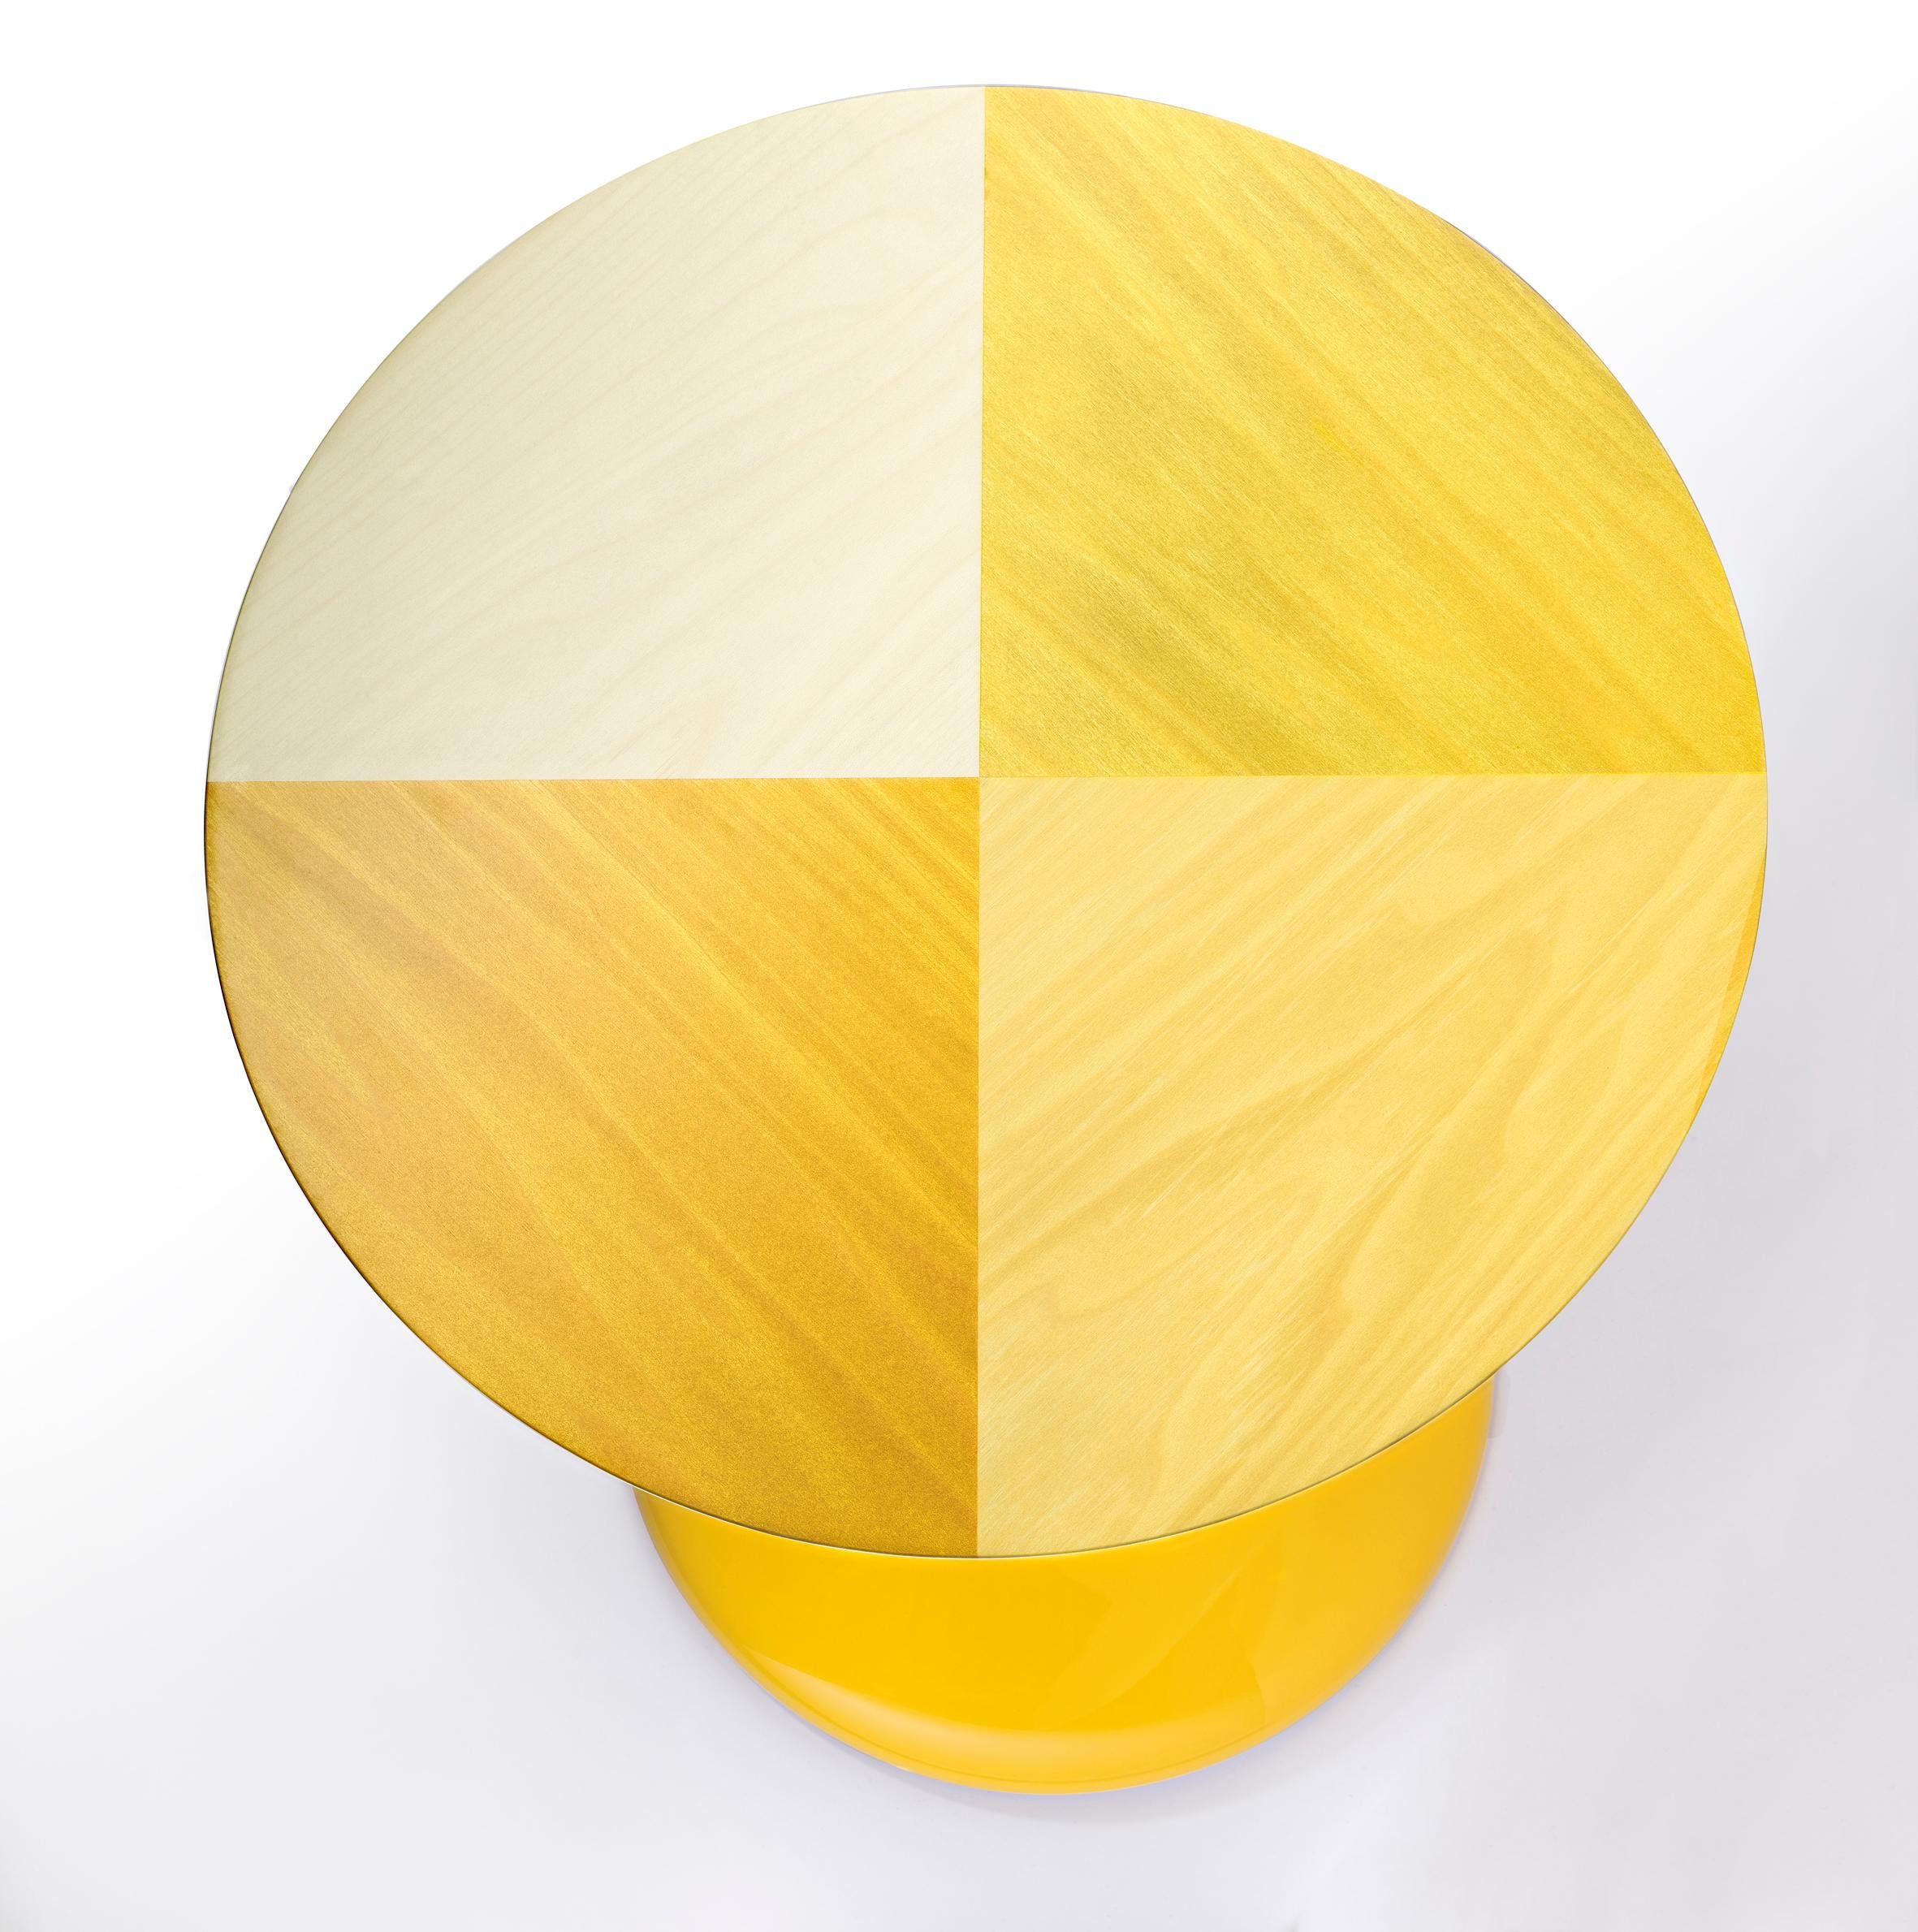 Ein dekoratives Guéridon, ganz aus Blockmaterial gedreht und mit Hochglanzlack in Goldgelb RAL 1004 lackiert.
Die Decke ist mit klarem Ahornholz und verschiedenen gelb gefärbten Holzarten mit einem subtilen Holzrichtungswechselmuster